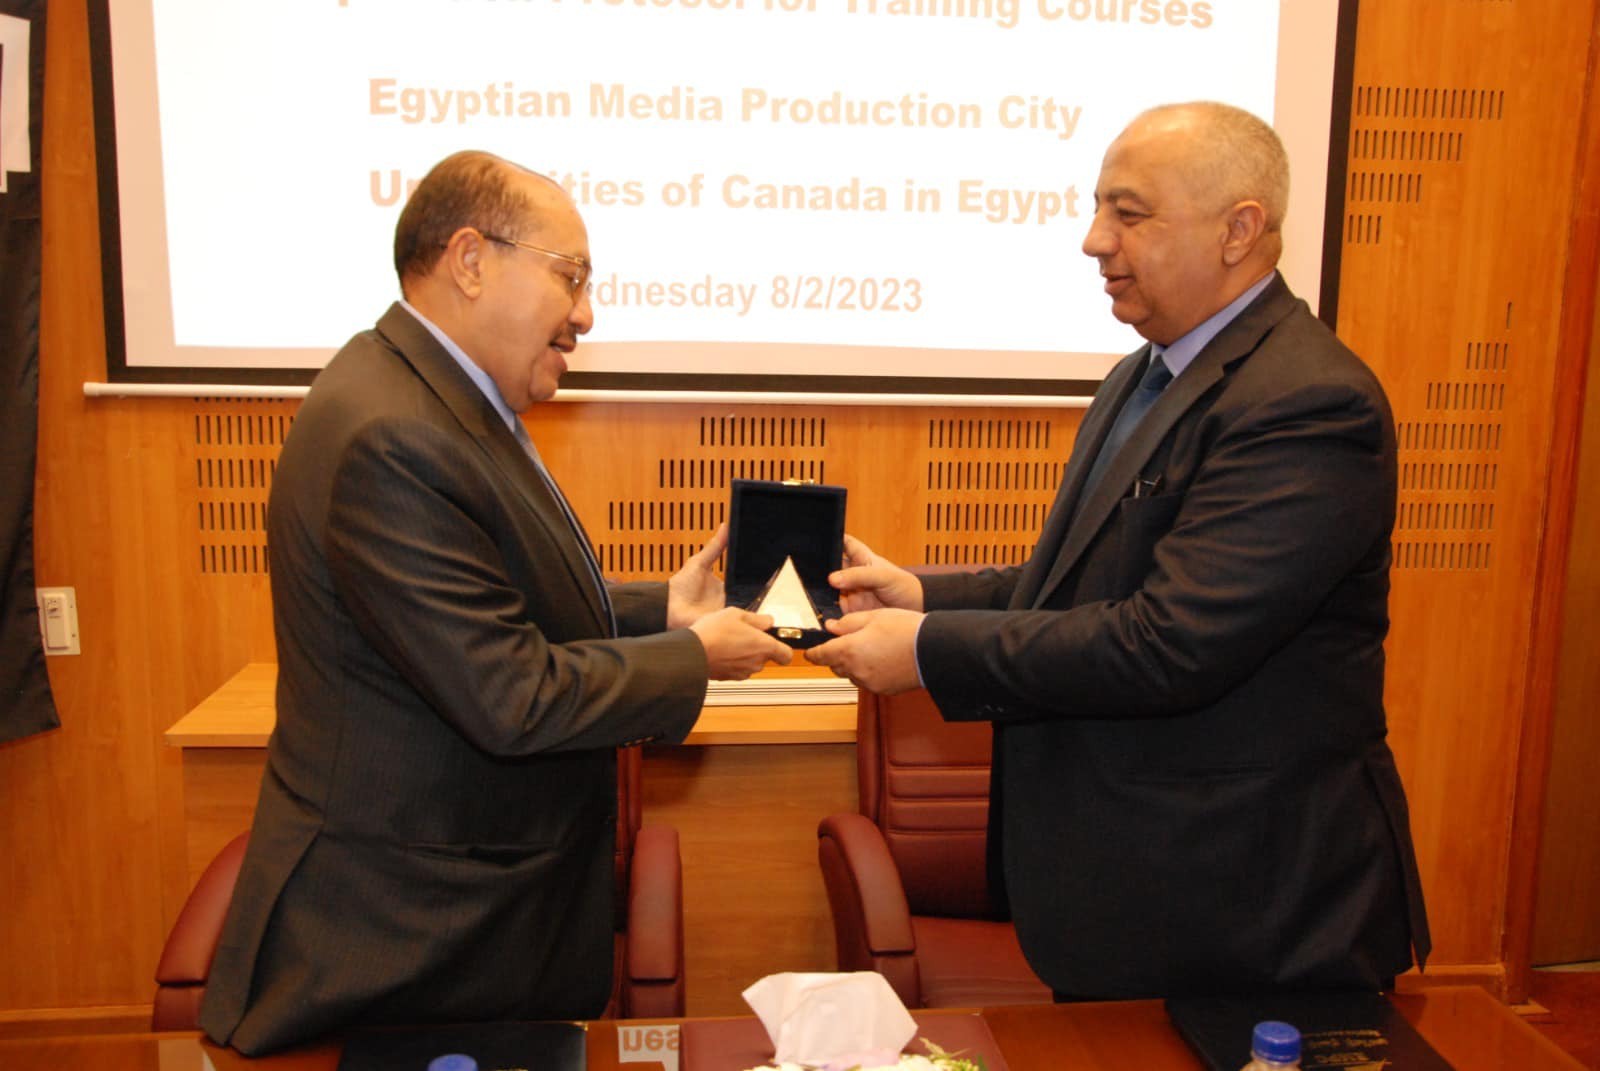 فرع جامعة تورونتو متروبوليتان بالقاهرة يعقد إتفاقية تعاون مع مدينة الإنتاج الإعلامي